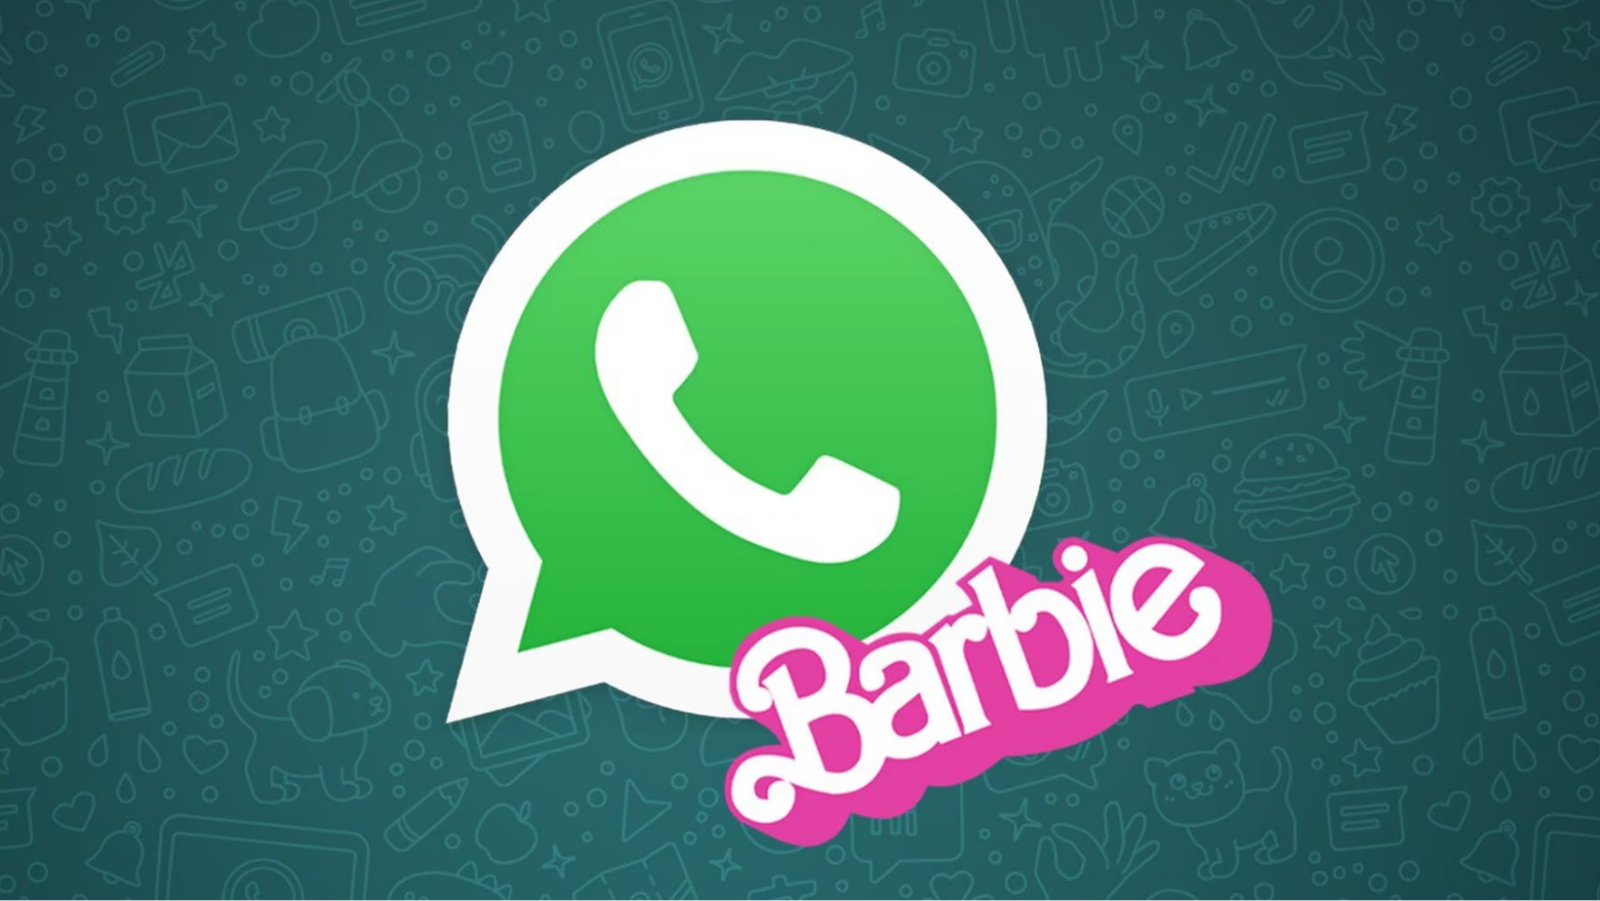 Trucos de WhatsApp: ¿Cómo activar el modo Barbie?